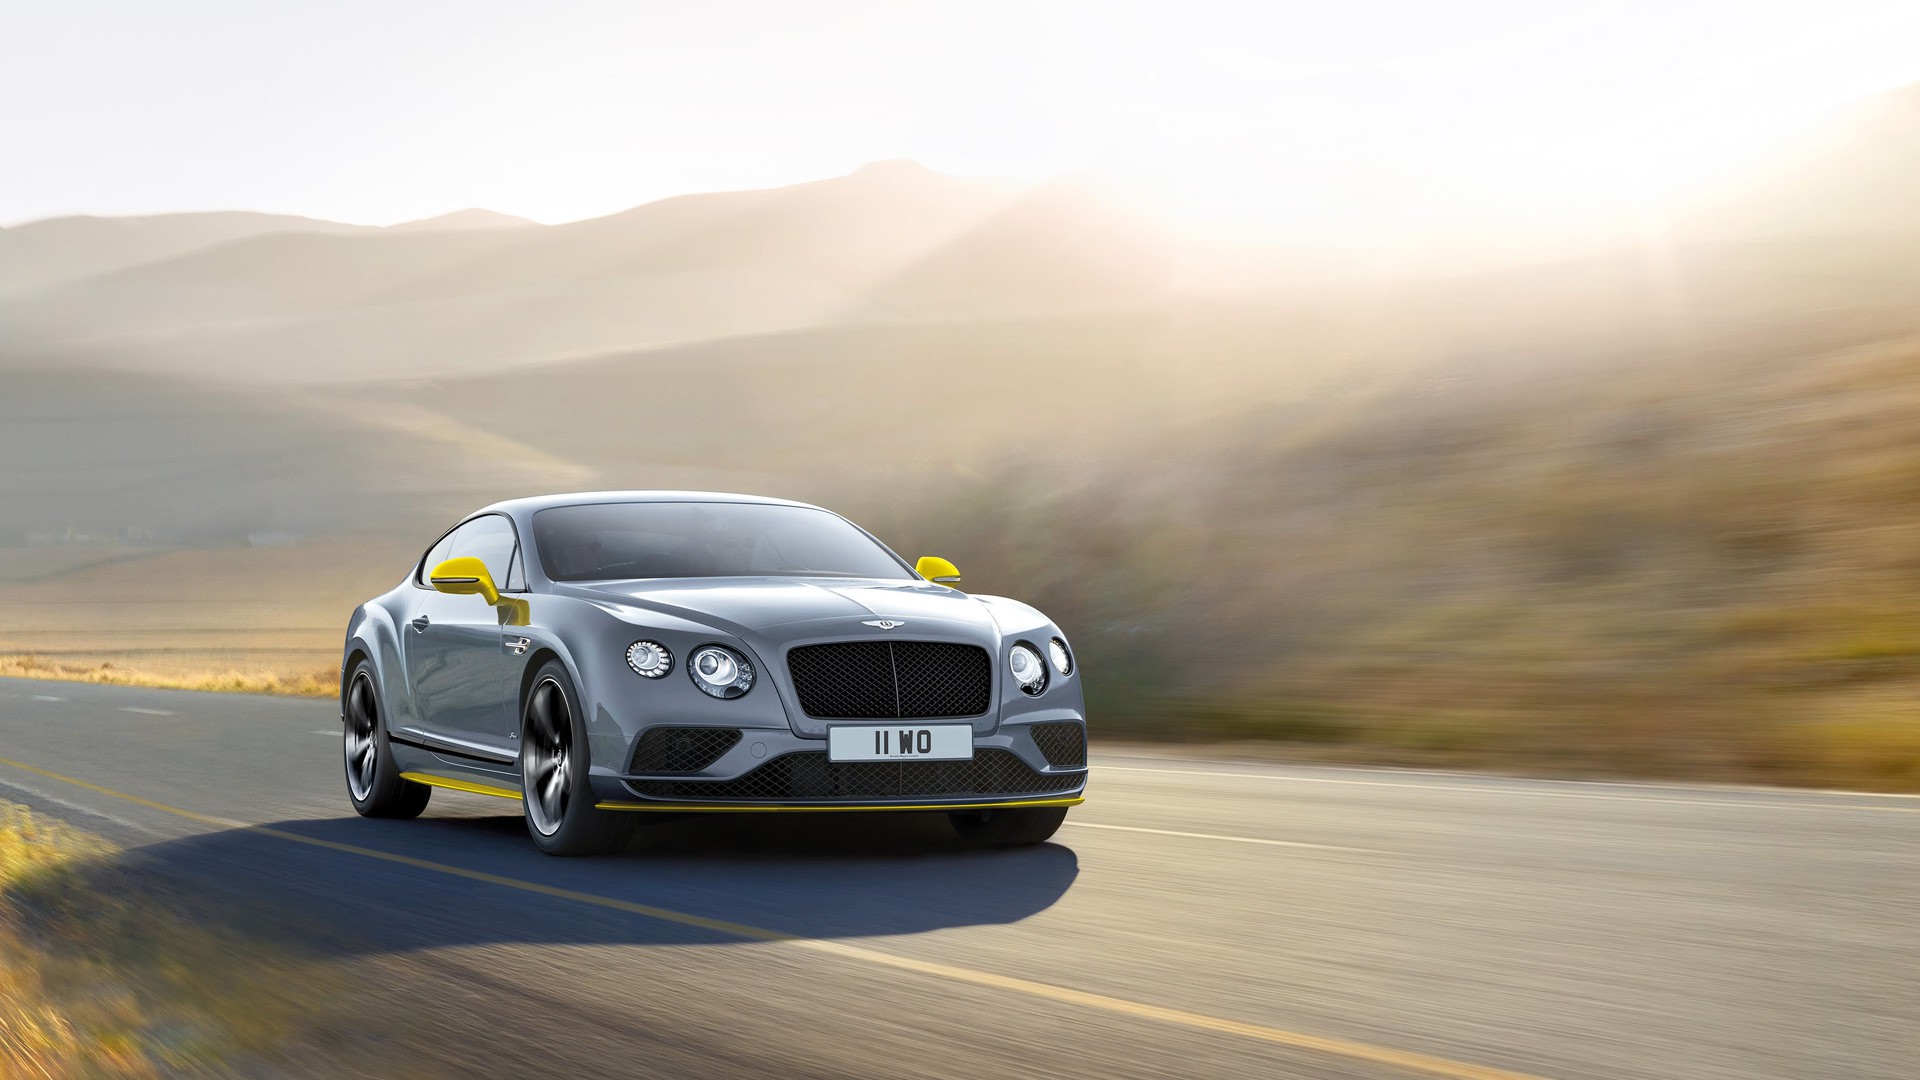 Autorizando despegue: el Bentley Continental GT Speed 2016 tiene ahora ¡642 CV!